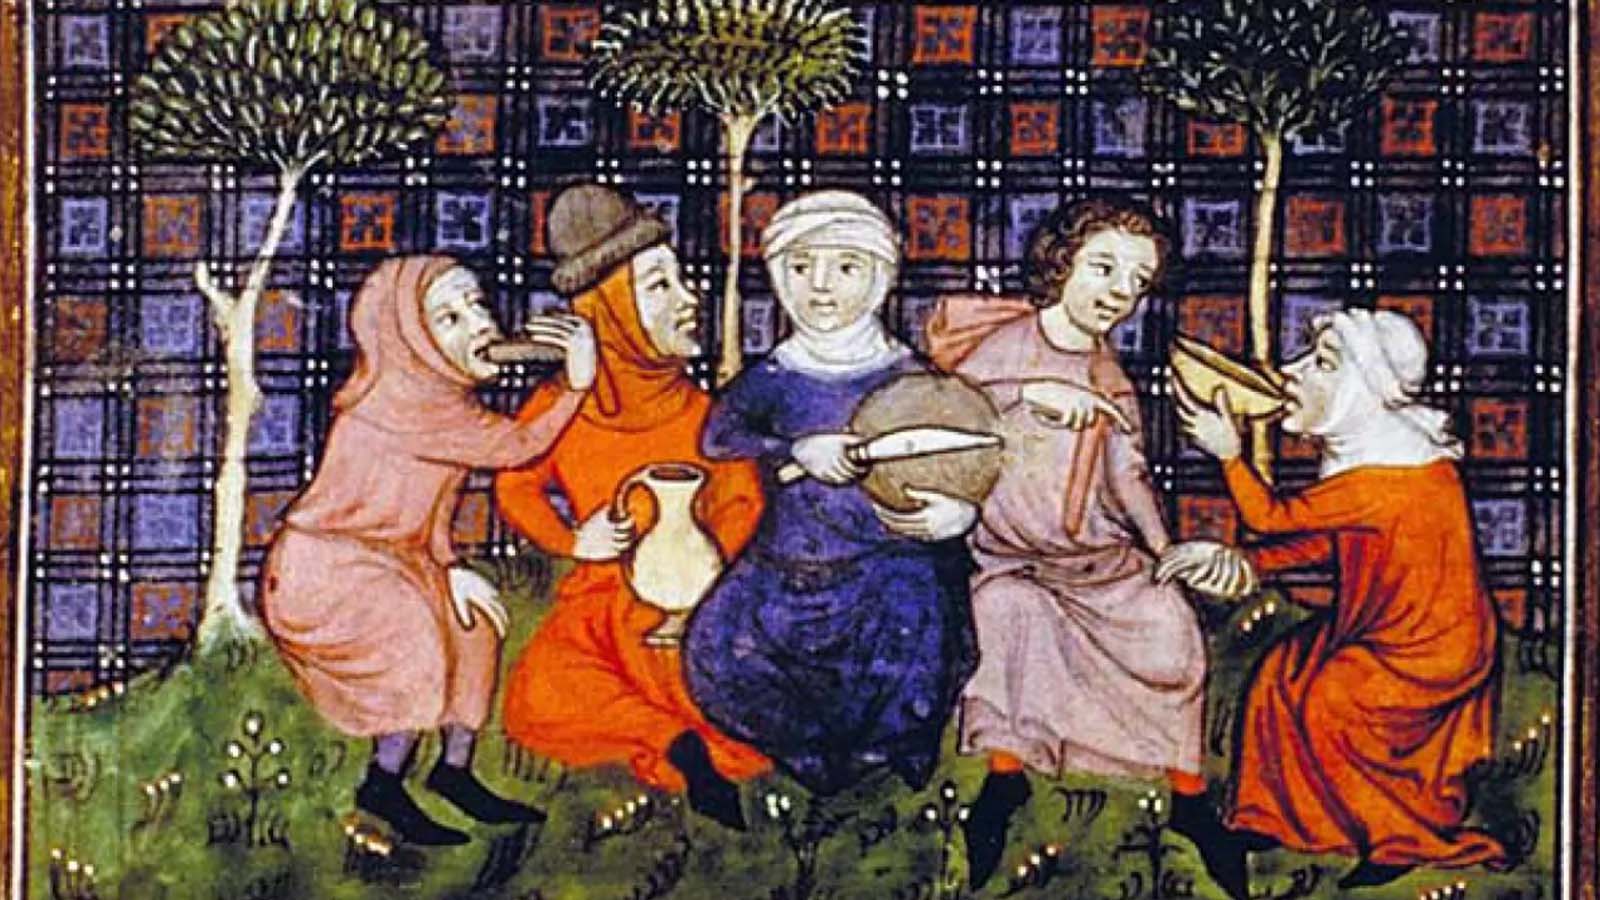 La storia della cucina medievale e le rivoluzioni agrarie che segnarono la fine delle restrizioni alimentari